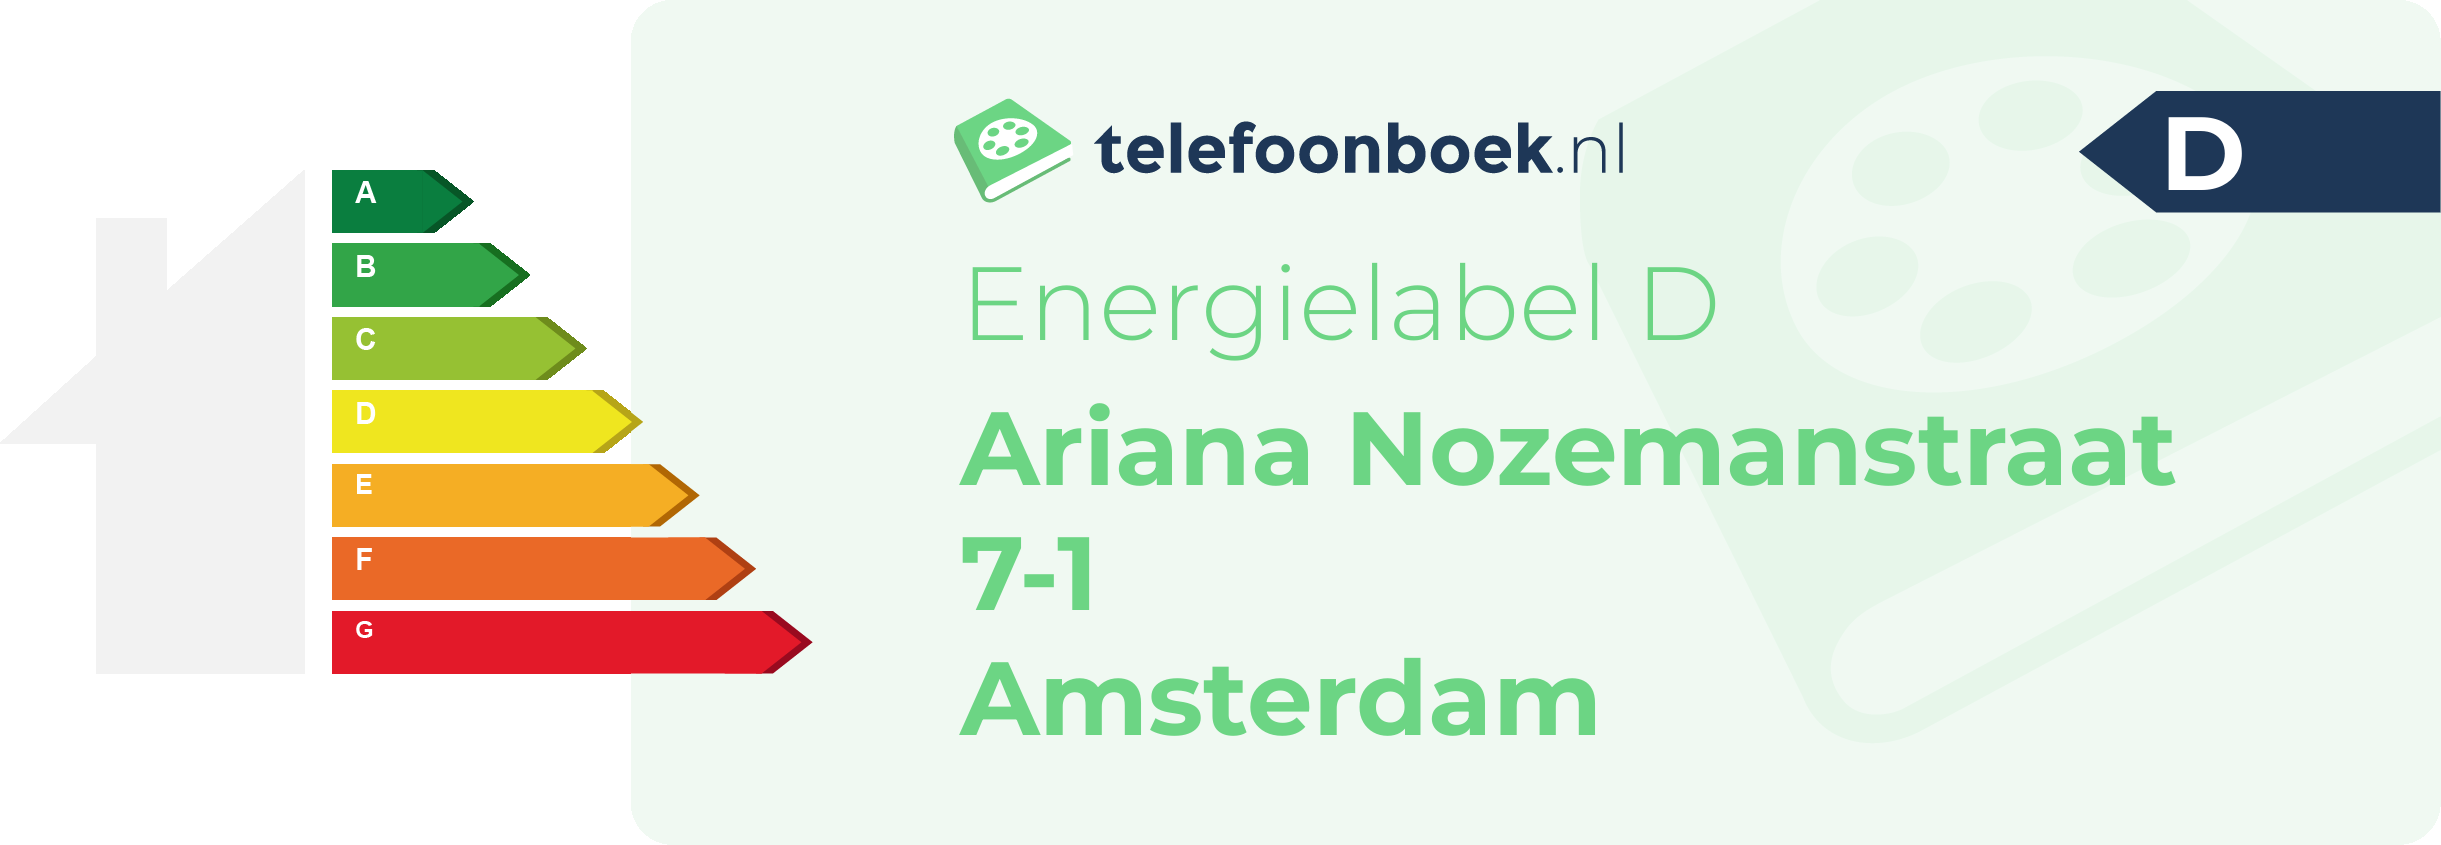 Energielabel Ariana Nozemanstraat 7-1 Amsterdam